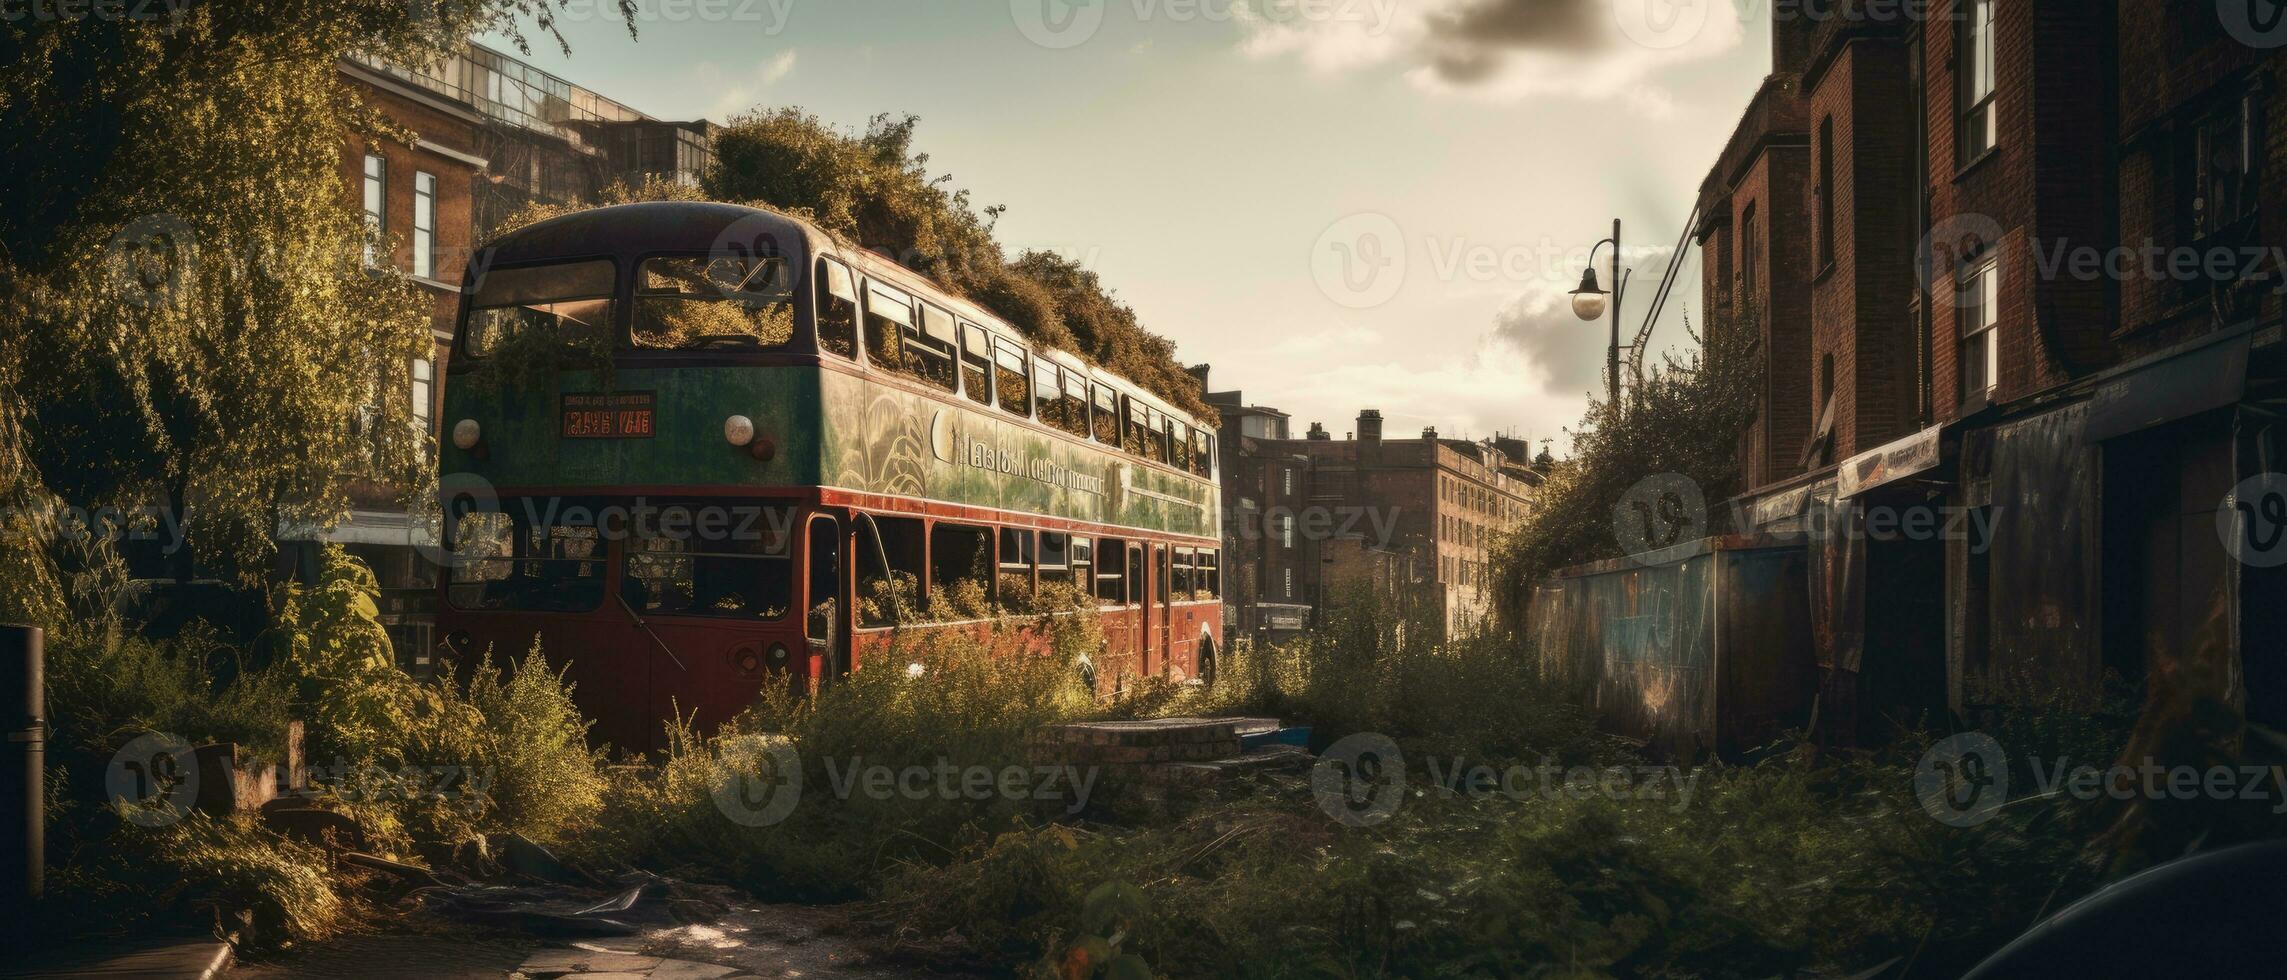 rouge autobus double decker Londres Publier apocalypse paysage Jeu fond d'écran photo art illustration rouille